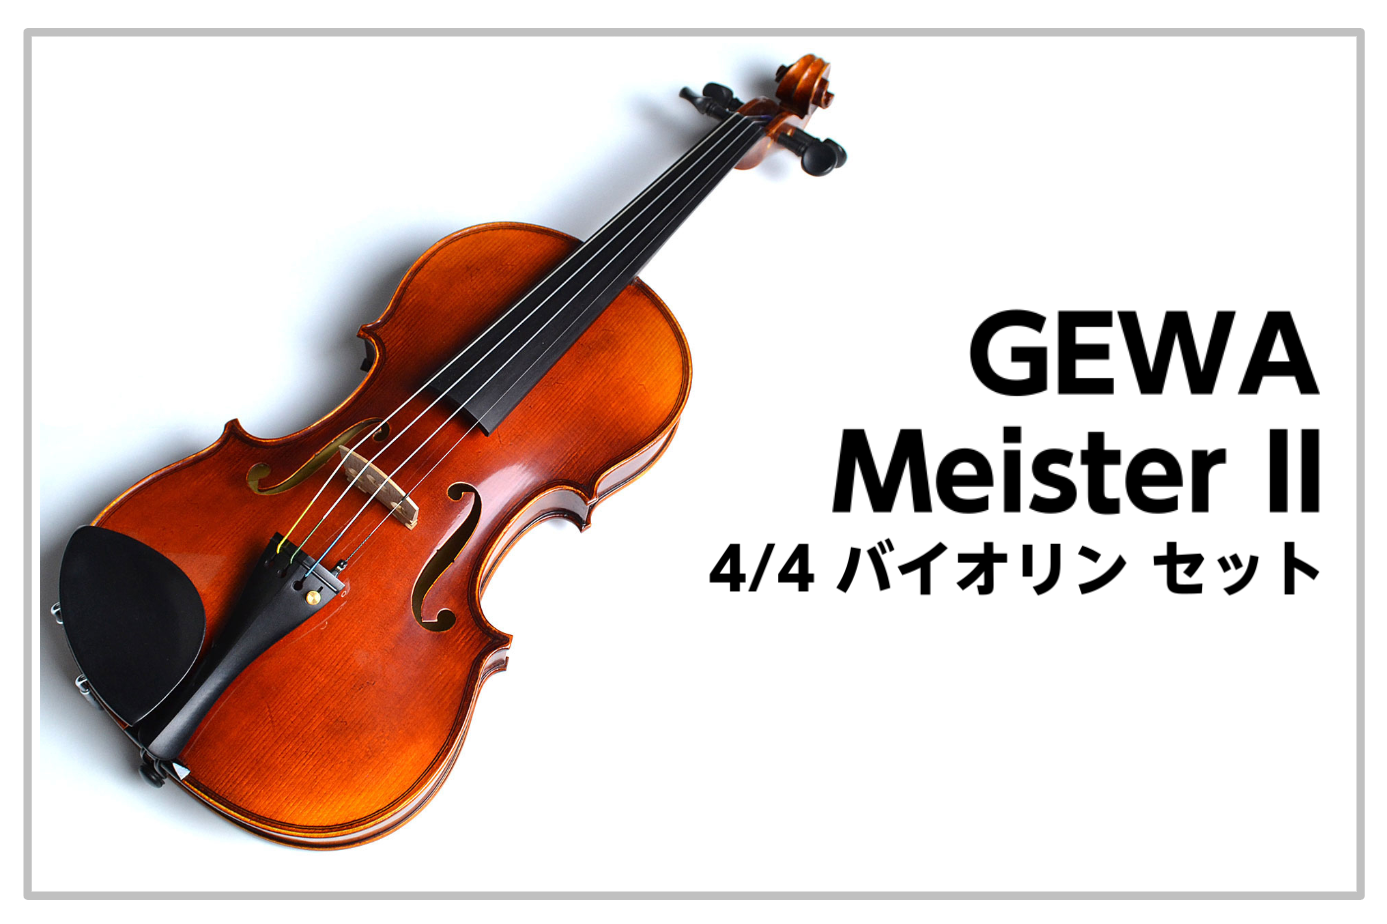 【バイオリン】GEWA Meister II バイオリン セット 4/4 島村楽器限定モデル